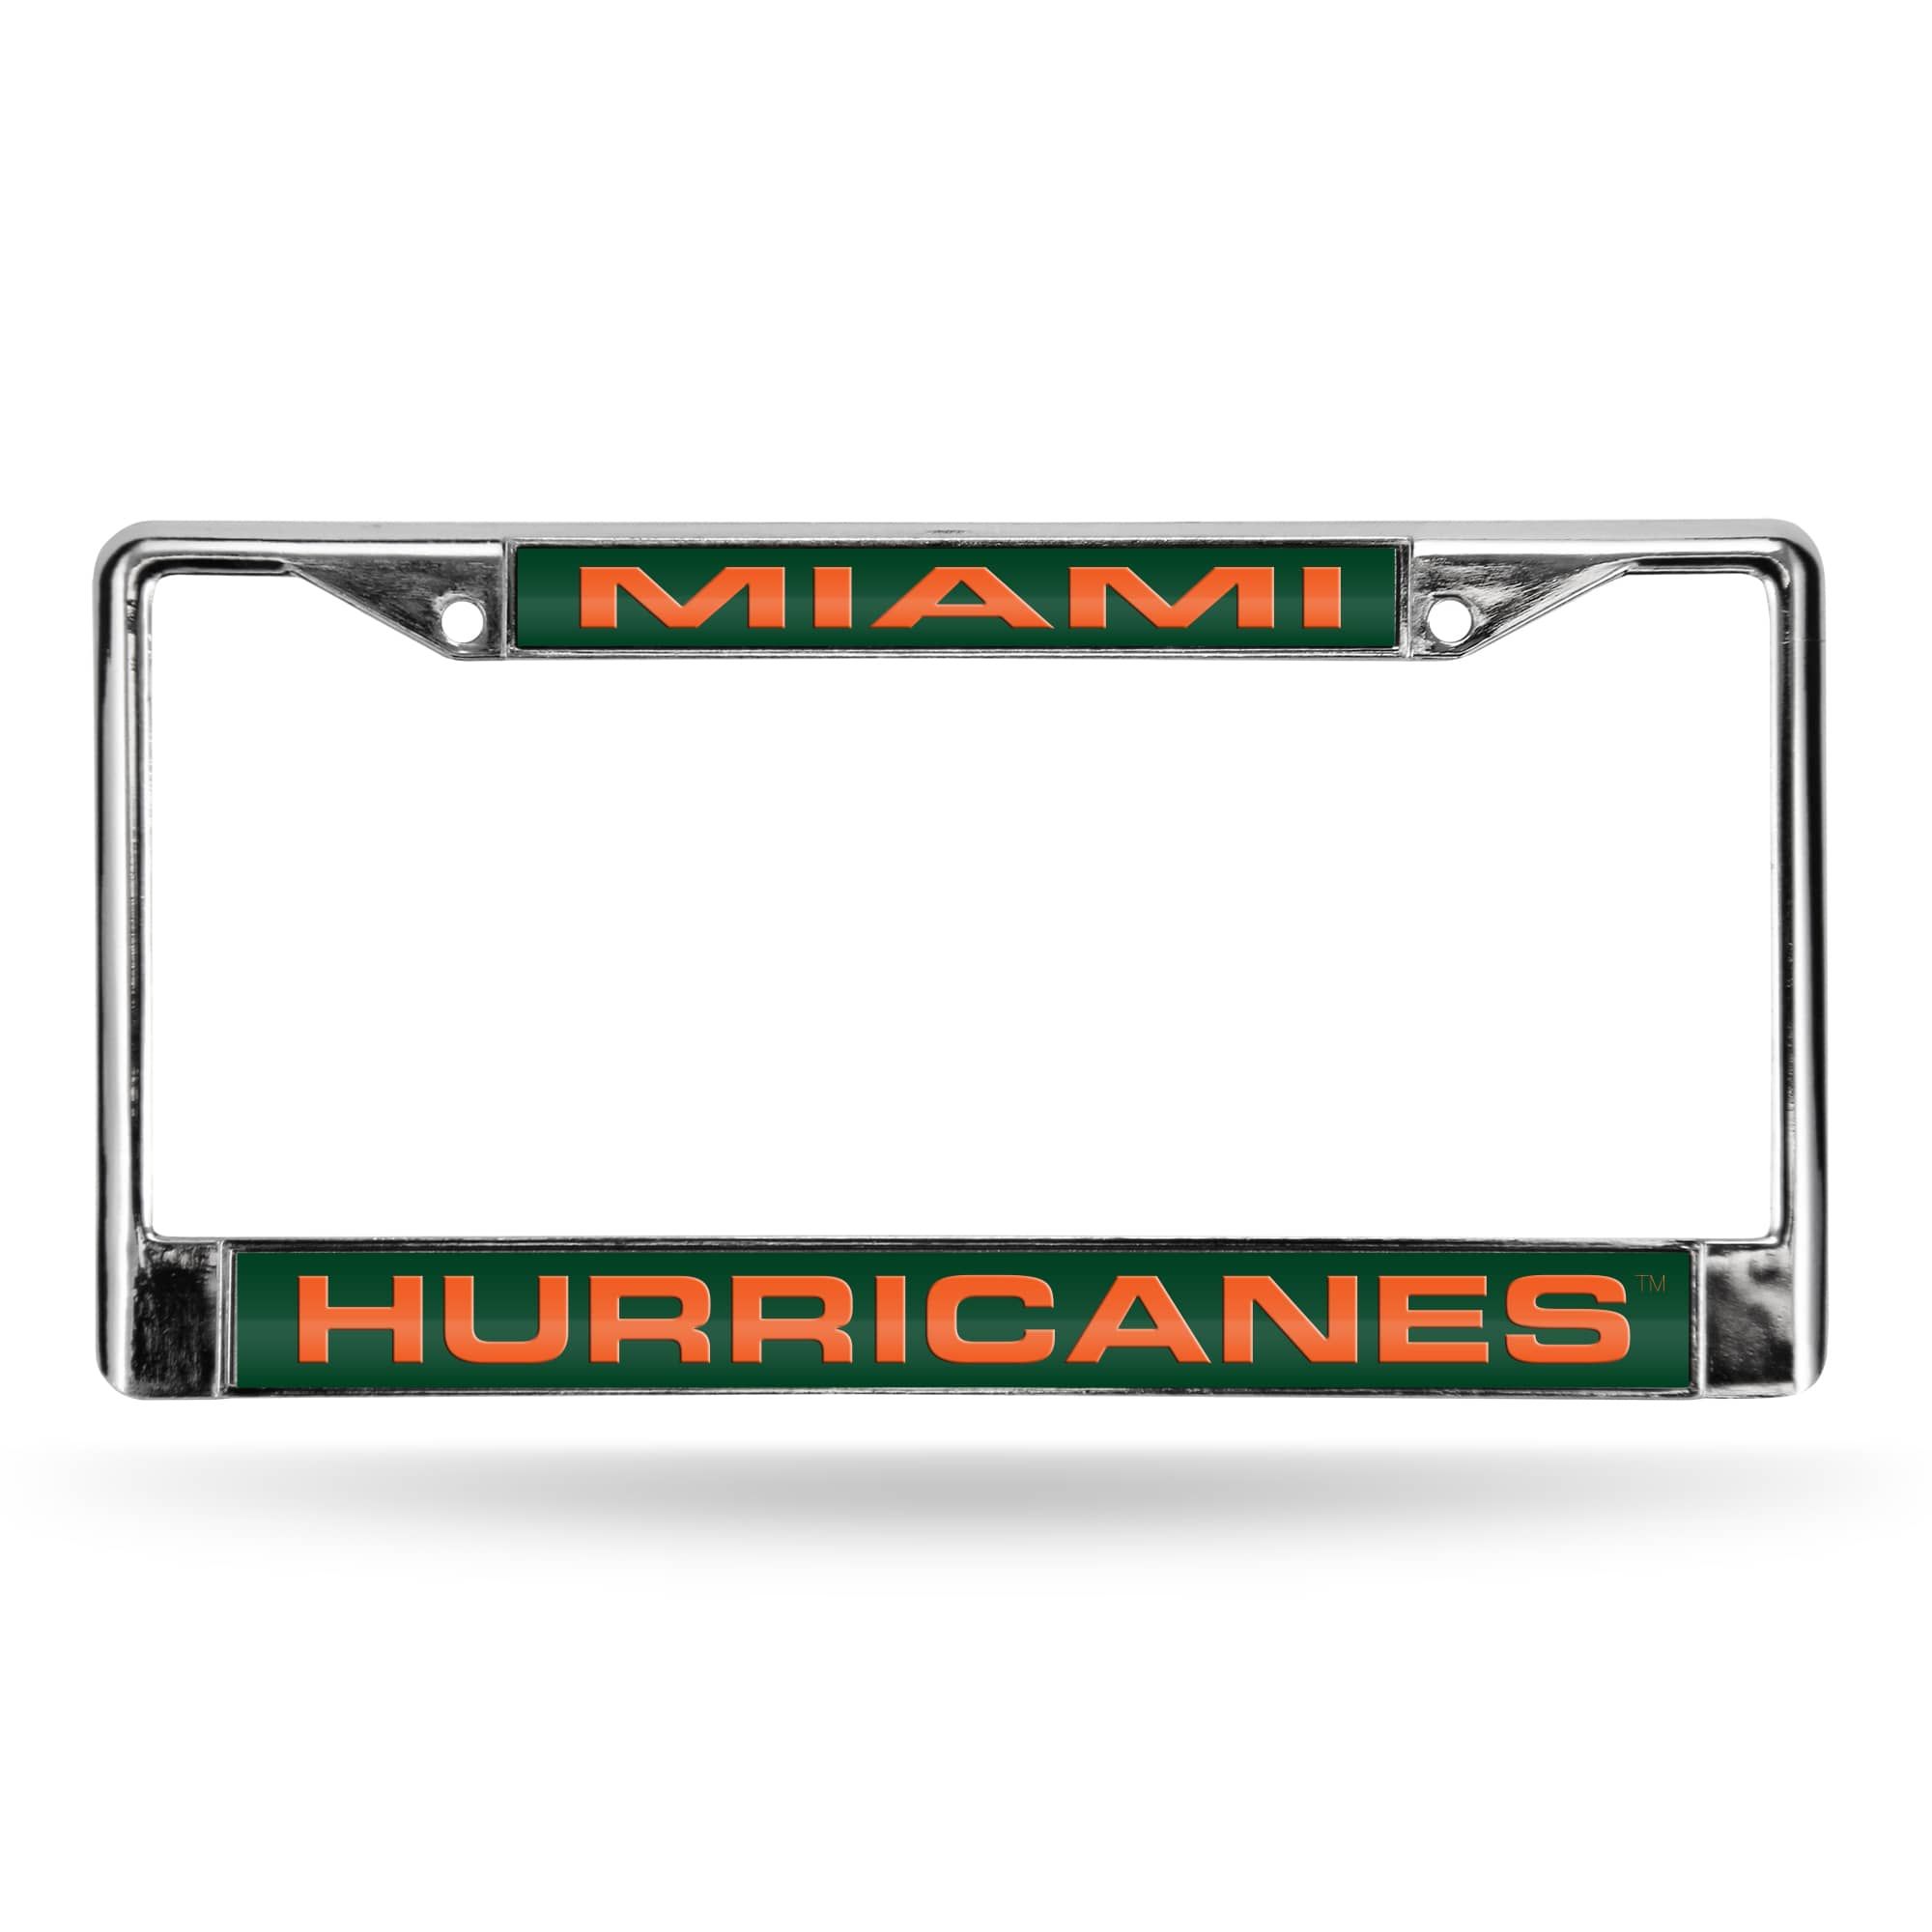 Rico 6" x 12" Green and Silver Colored College Miami Hurricanes License Plate Cover